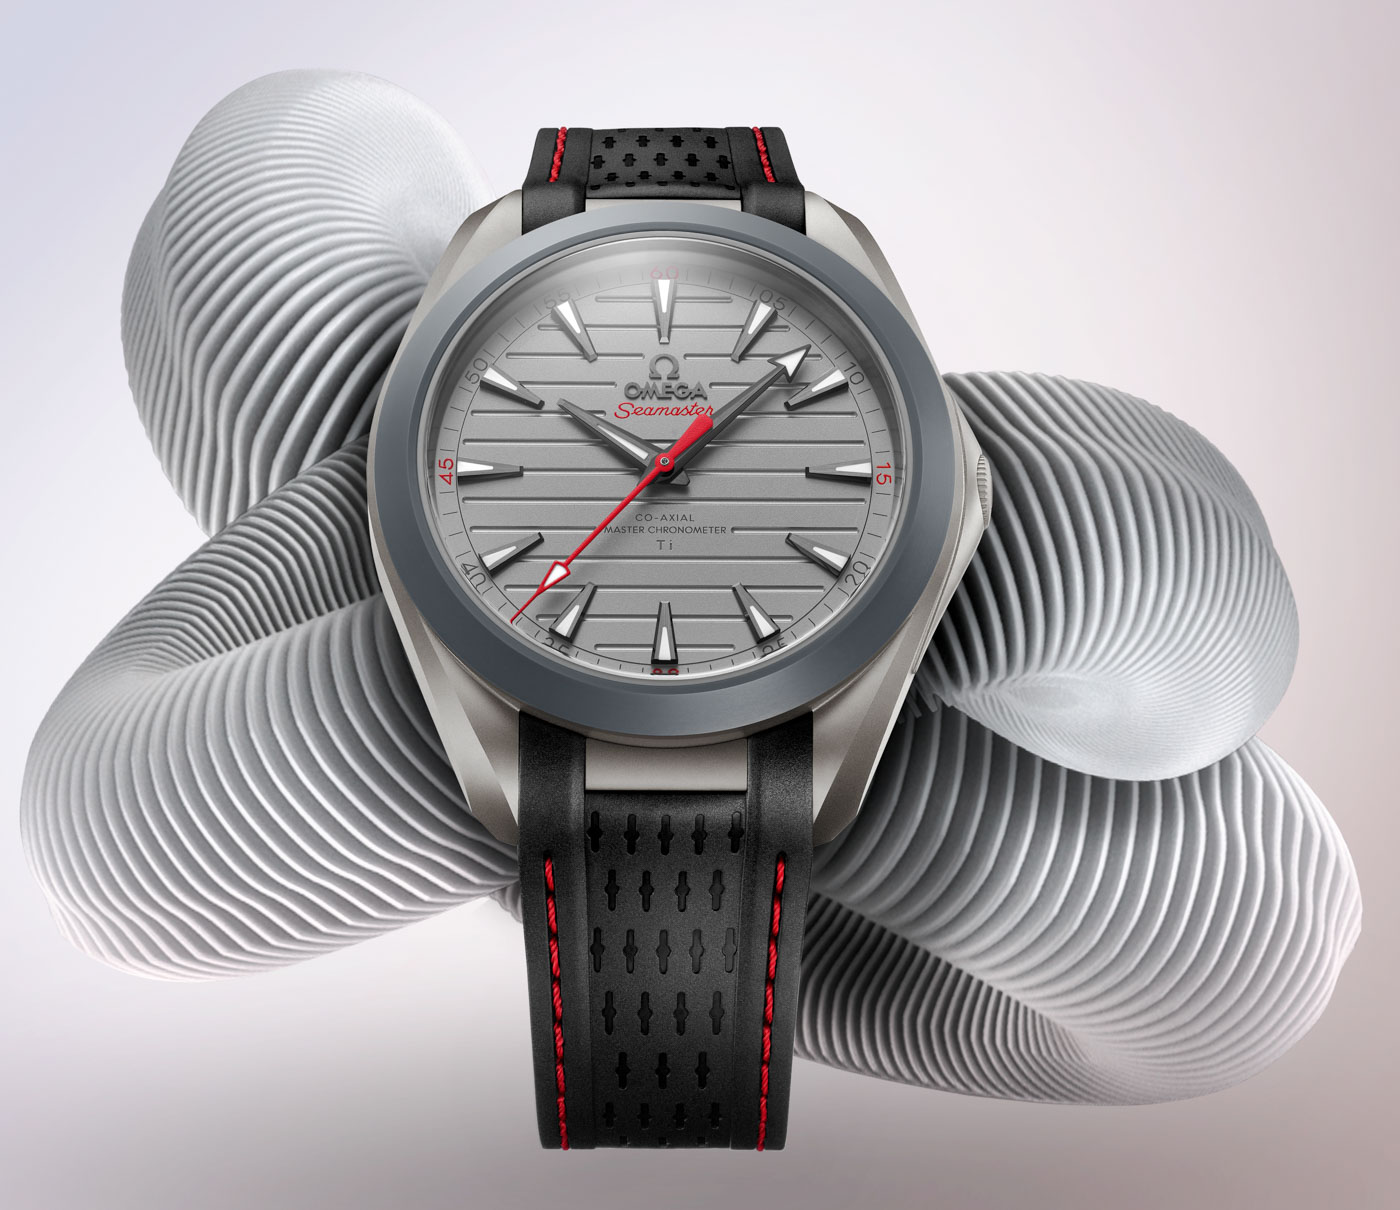 omega titanium watch